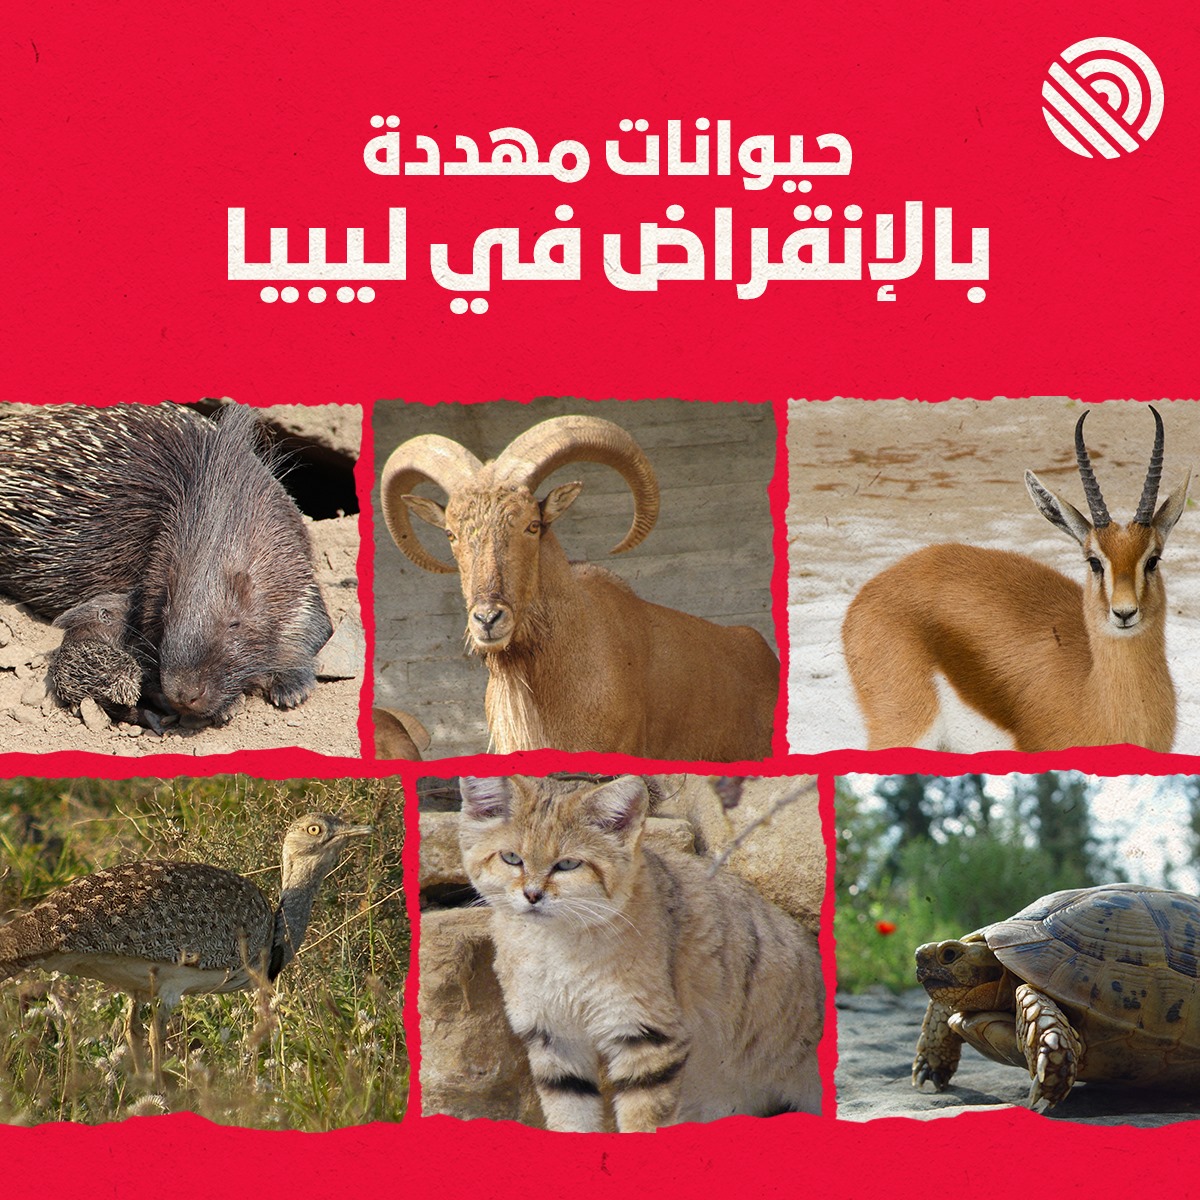 حيوانات في ليبيا مهددة بالانقراض